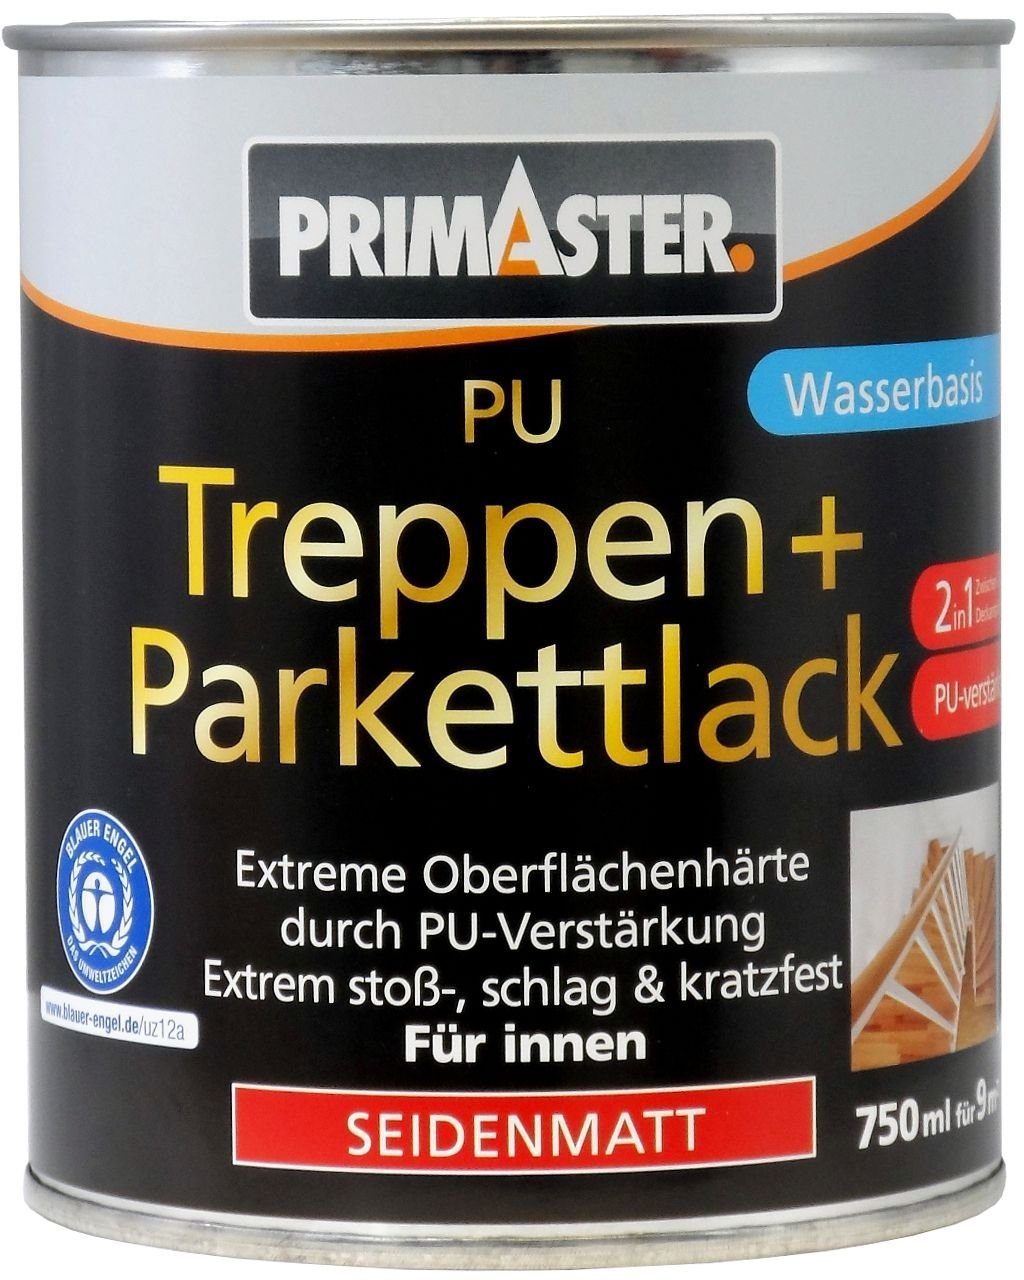 Primaster Klarlack ml 2in1 PU Primaster Treppen- Parkettlack und 750